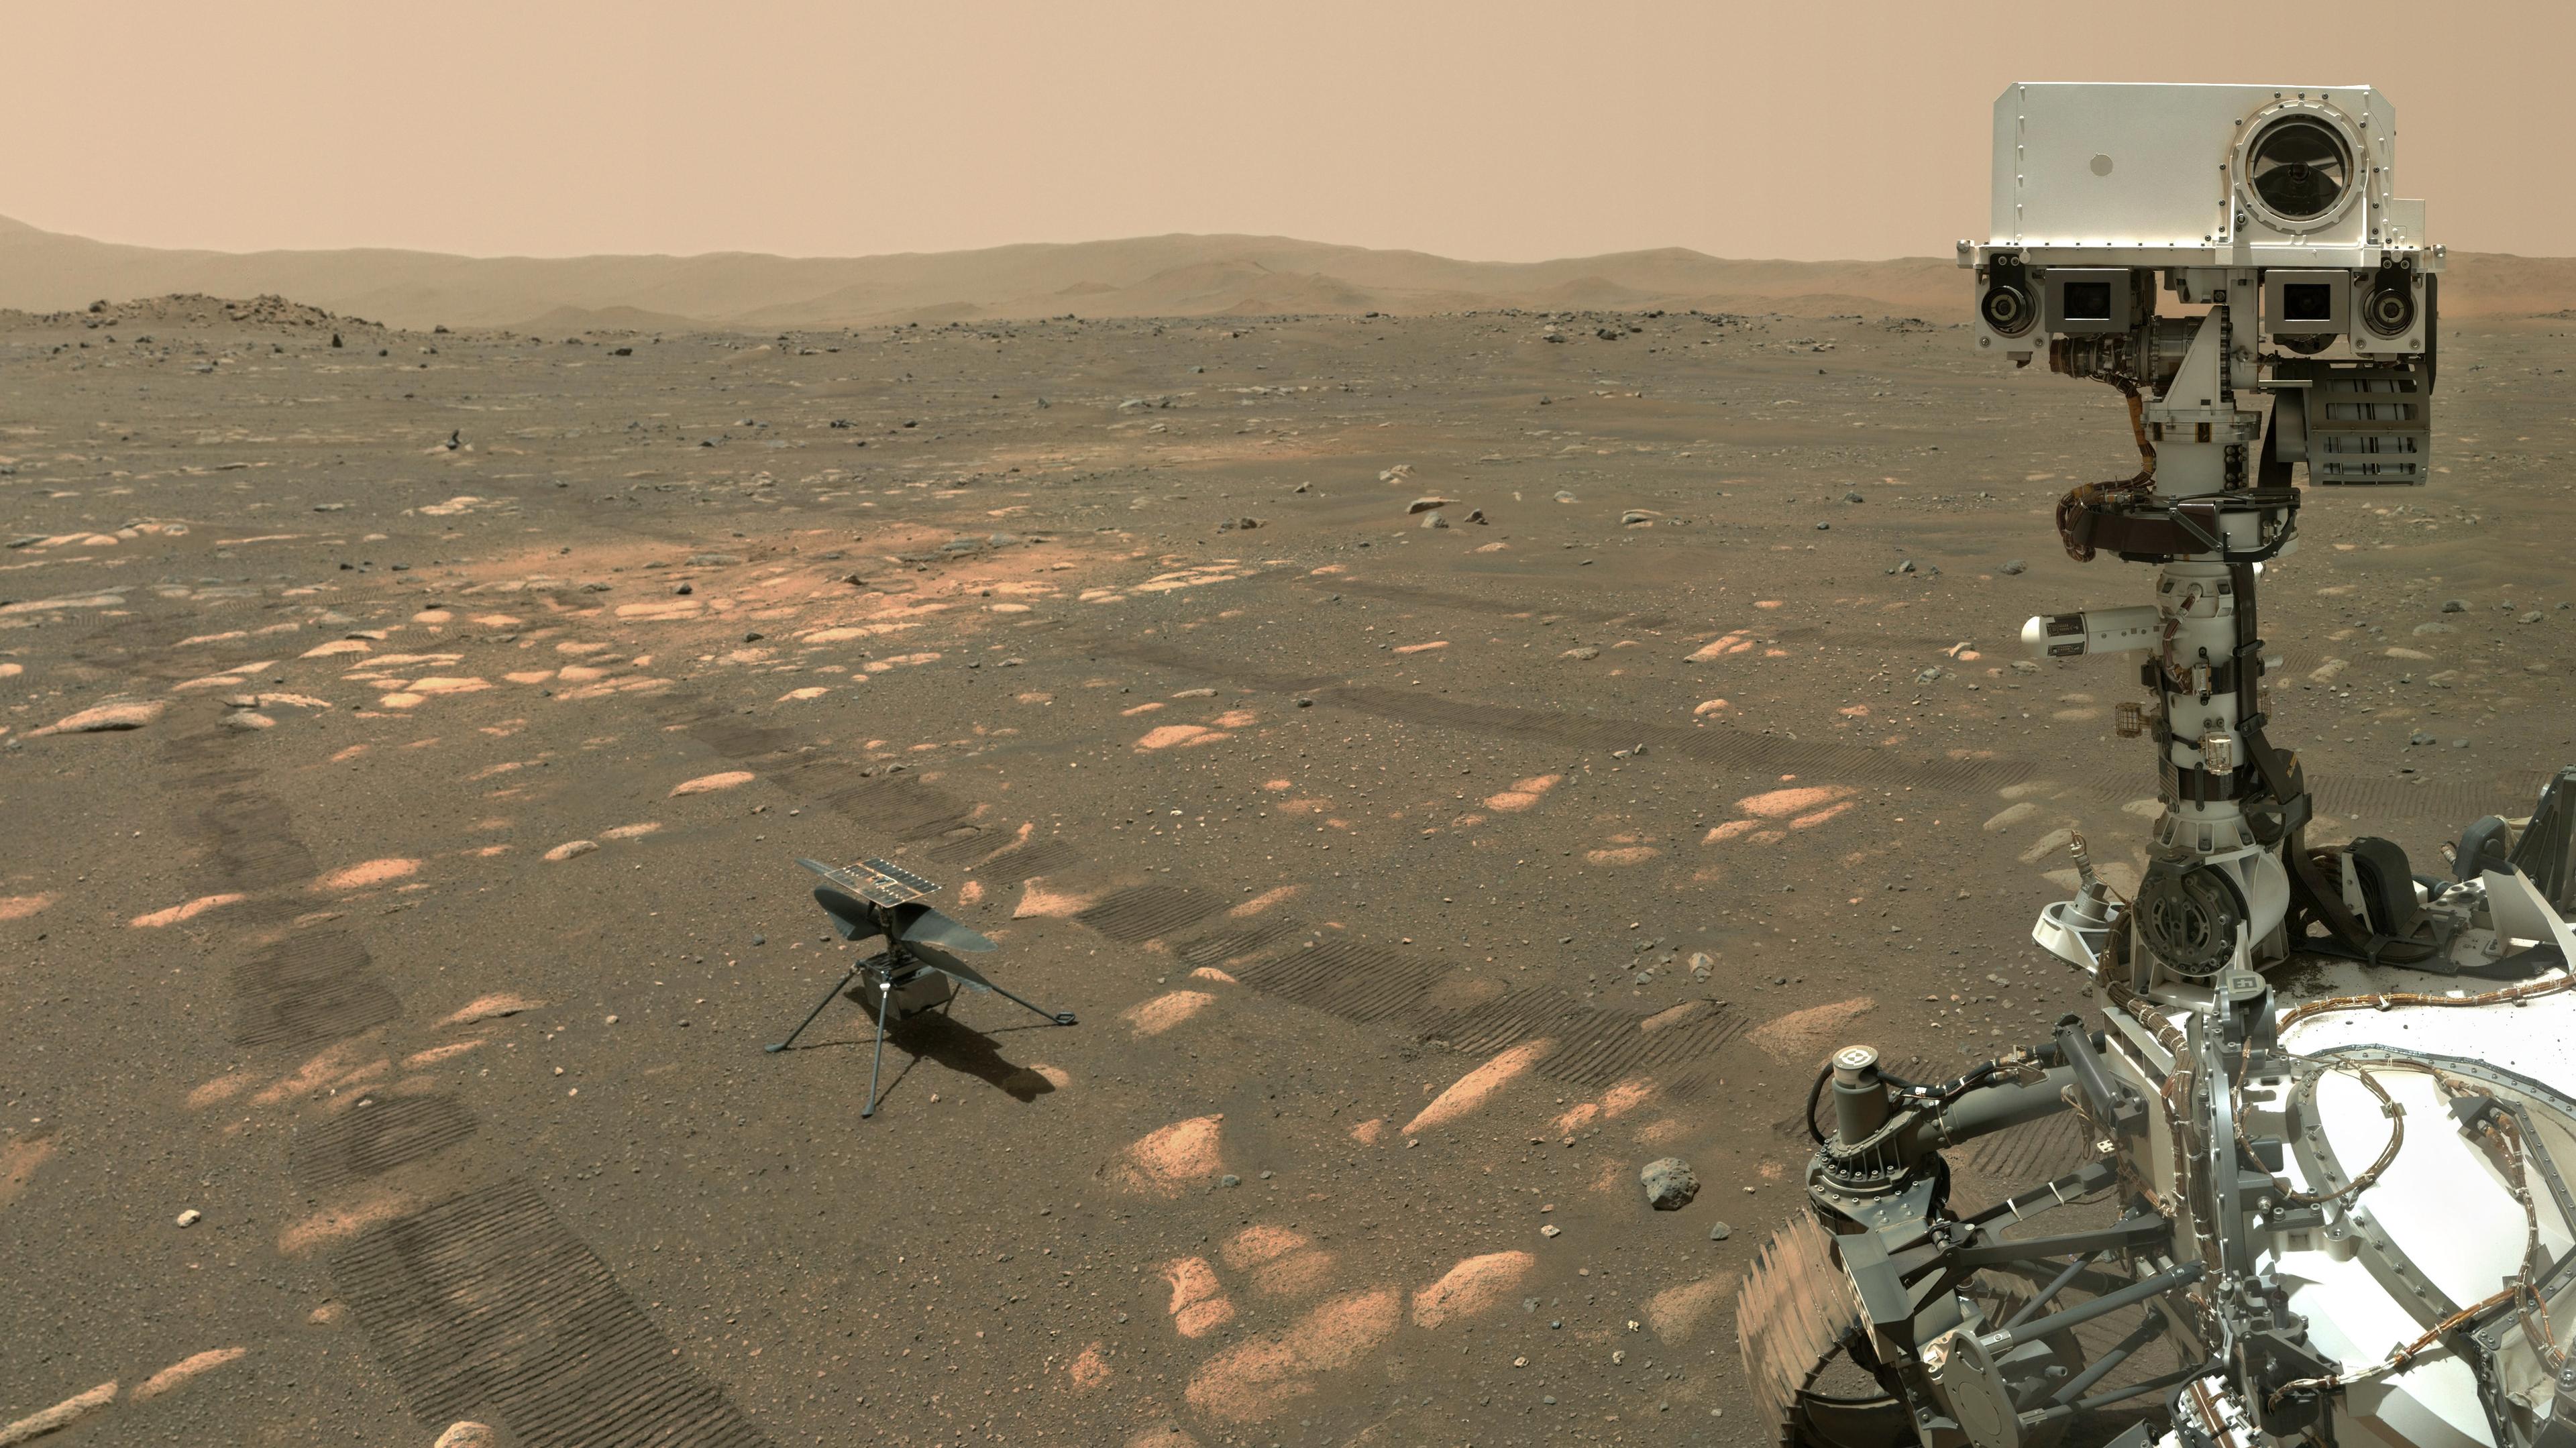 جزء من عربة المثابرة وأحد أذرعها الممدودة التي تحمل الكاميرا التي التقطت الصورة، ومن خلفها مروحيّة البراعة. يظهر سطح المرّيخ الواسع وعليه آثار عجلات المركبة.